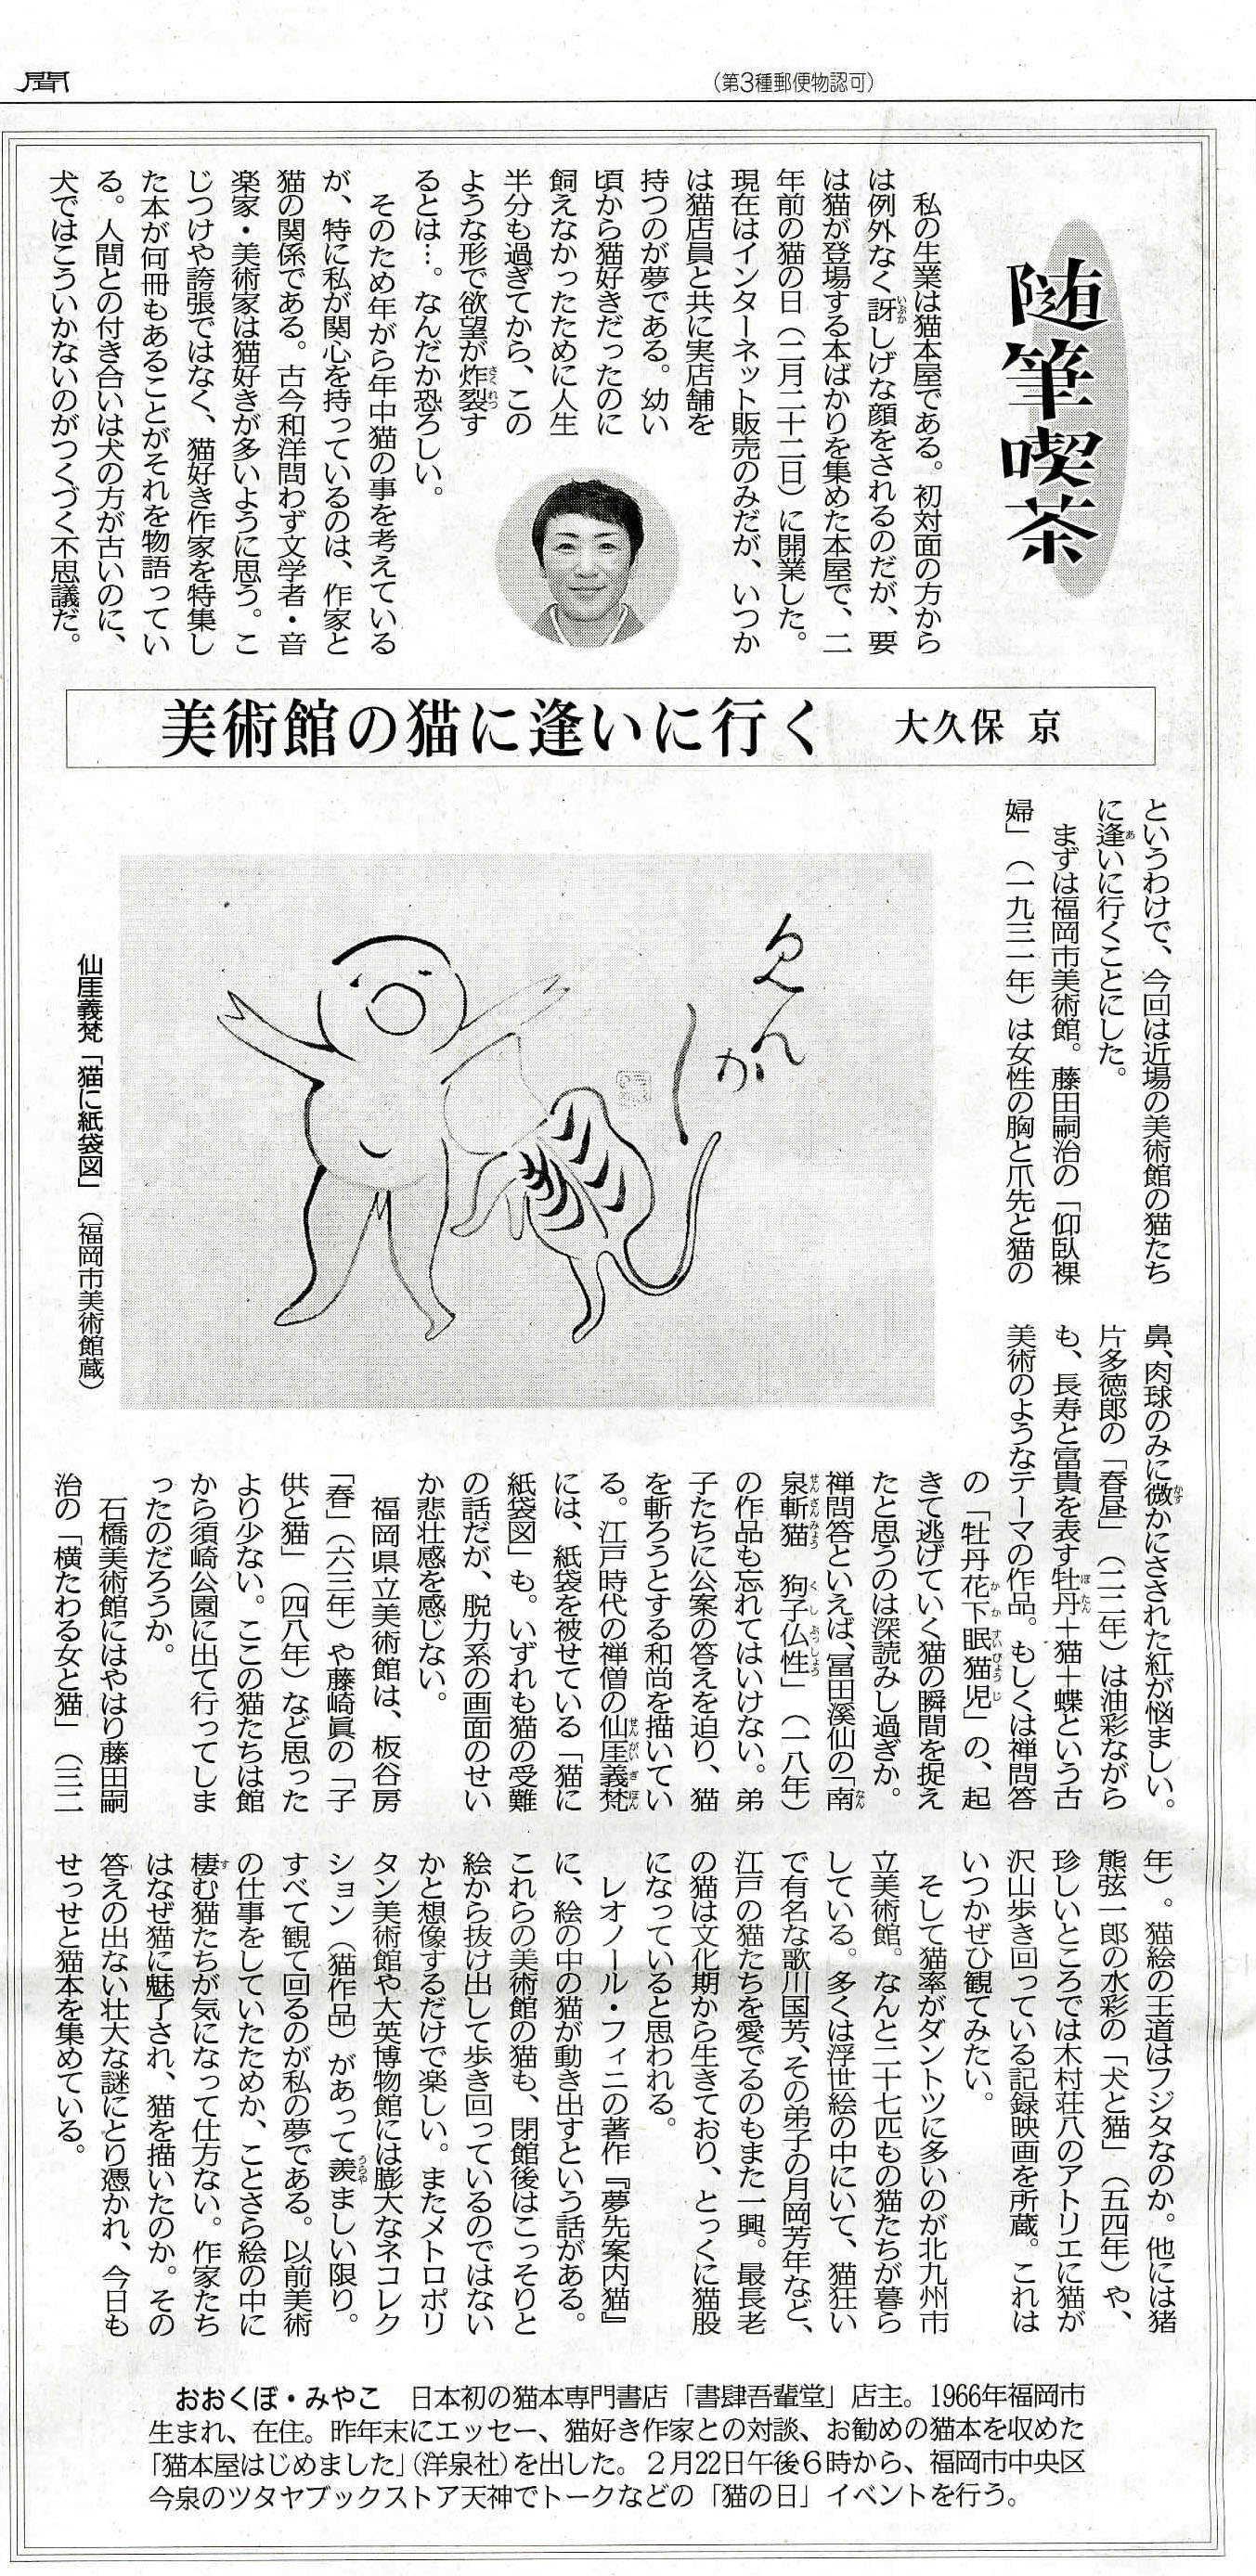 西日本新聞に掲載されました